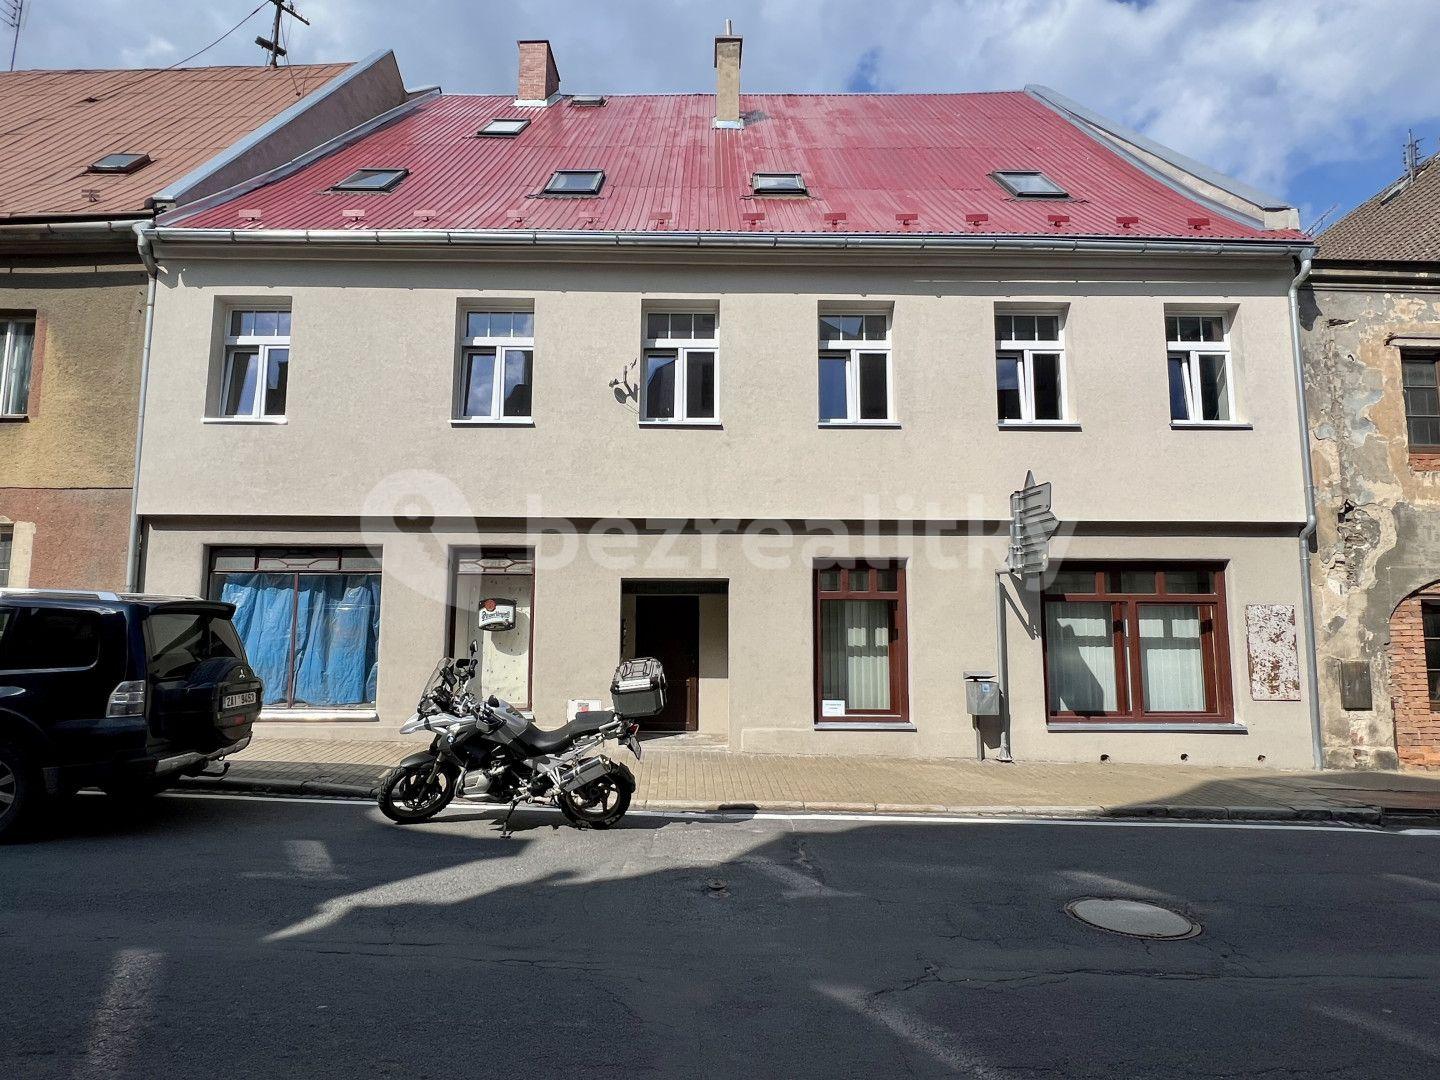 Prodej domu 500 m², pozemek 869 m², 17. listopadu, Javorník, Olomoucký kraj